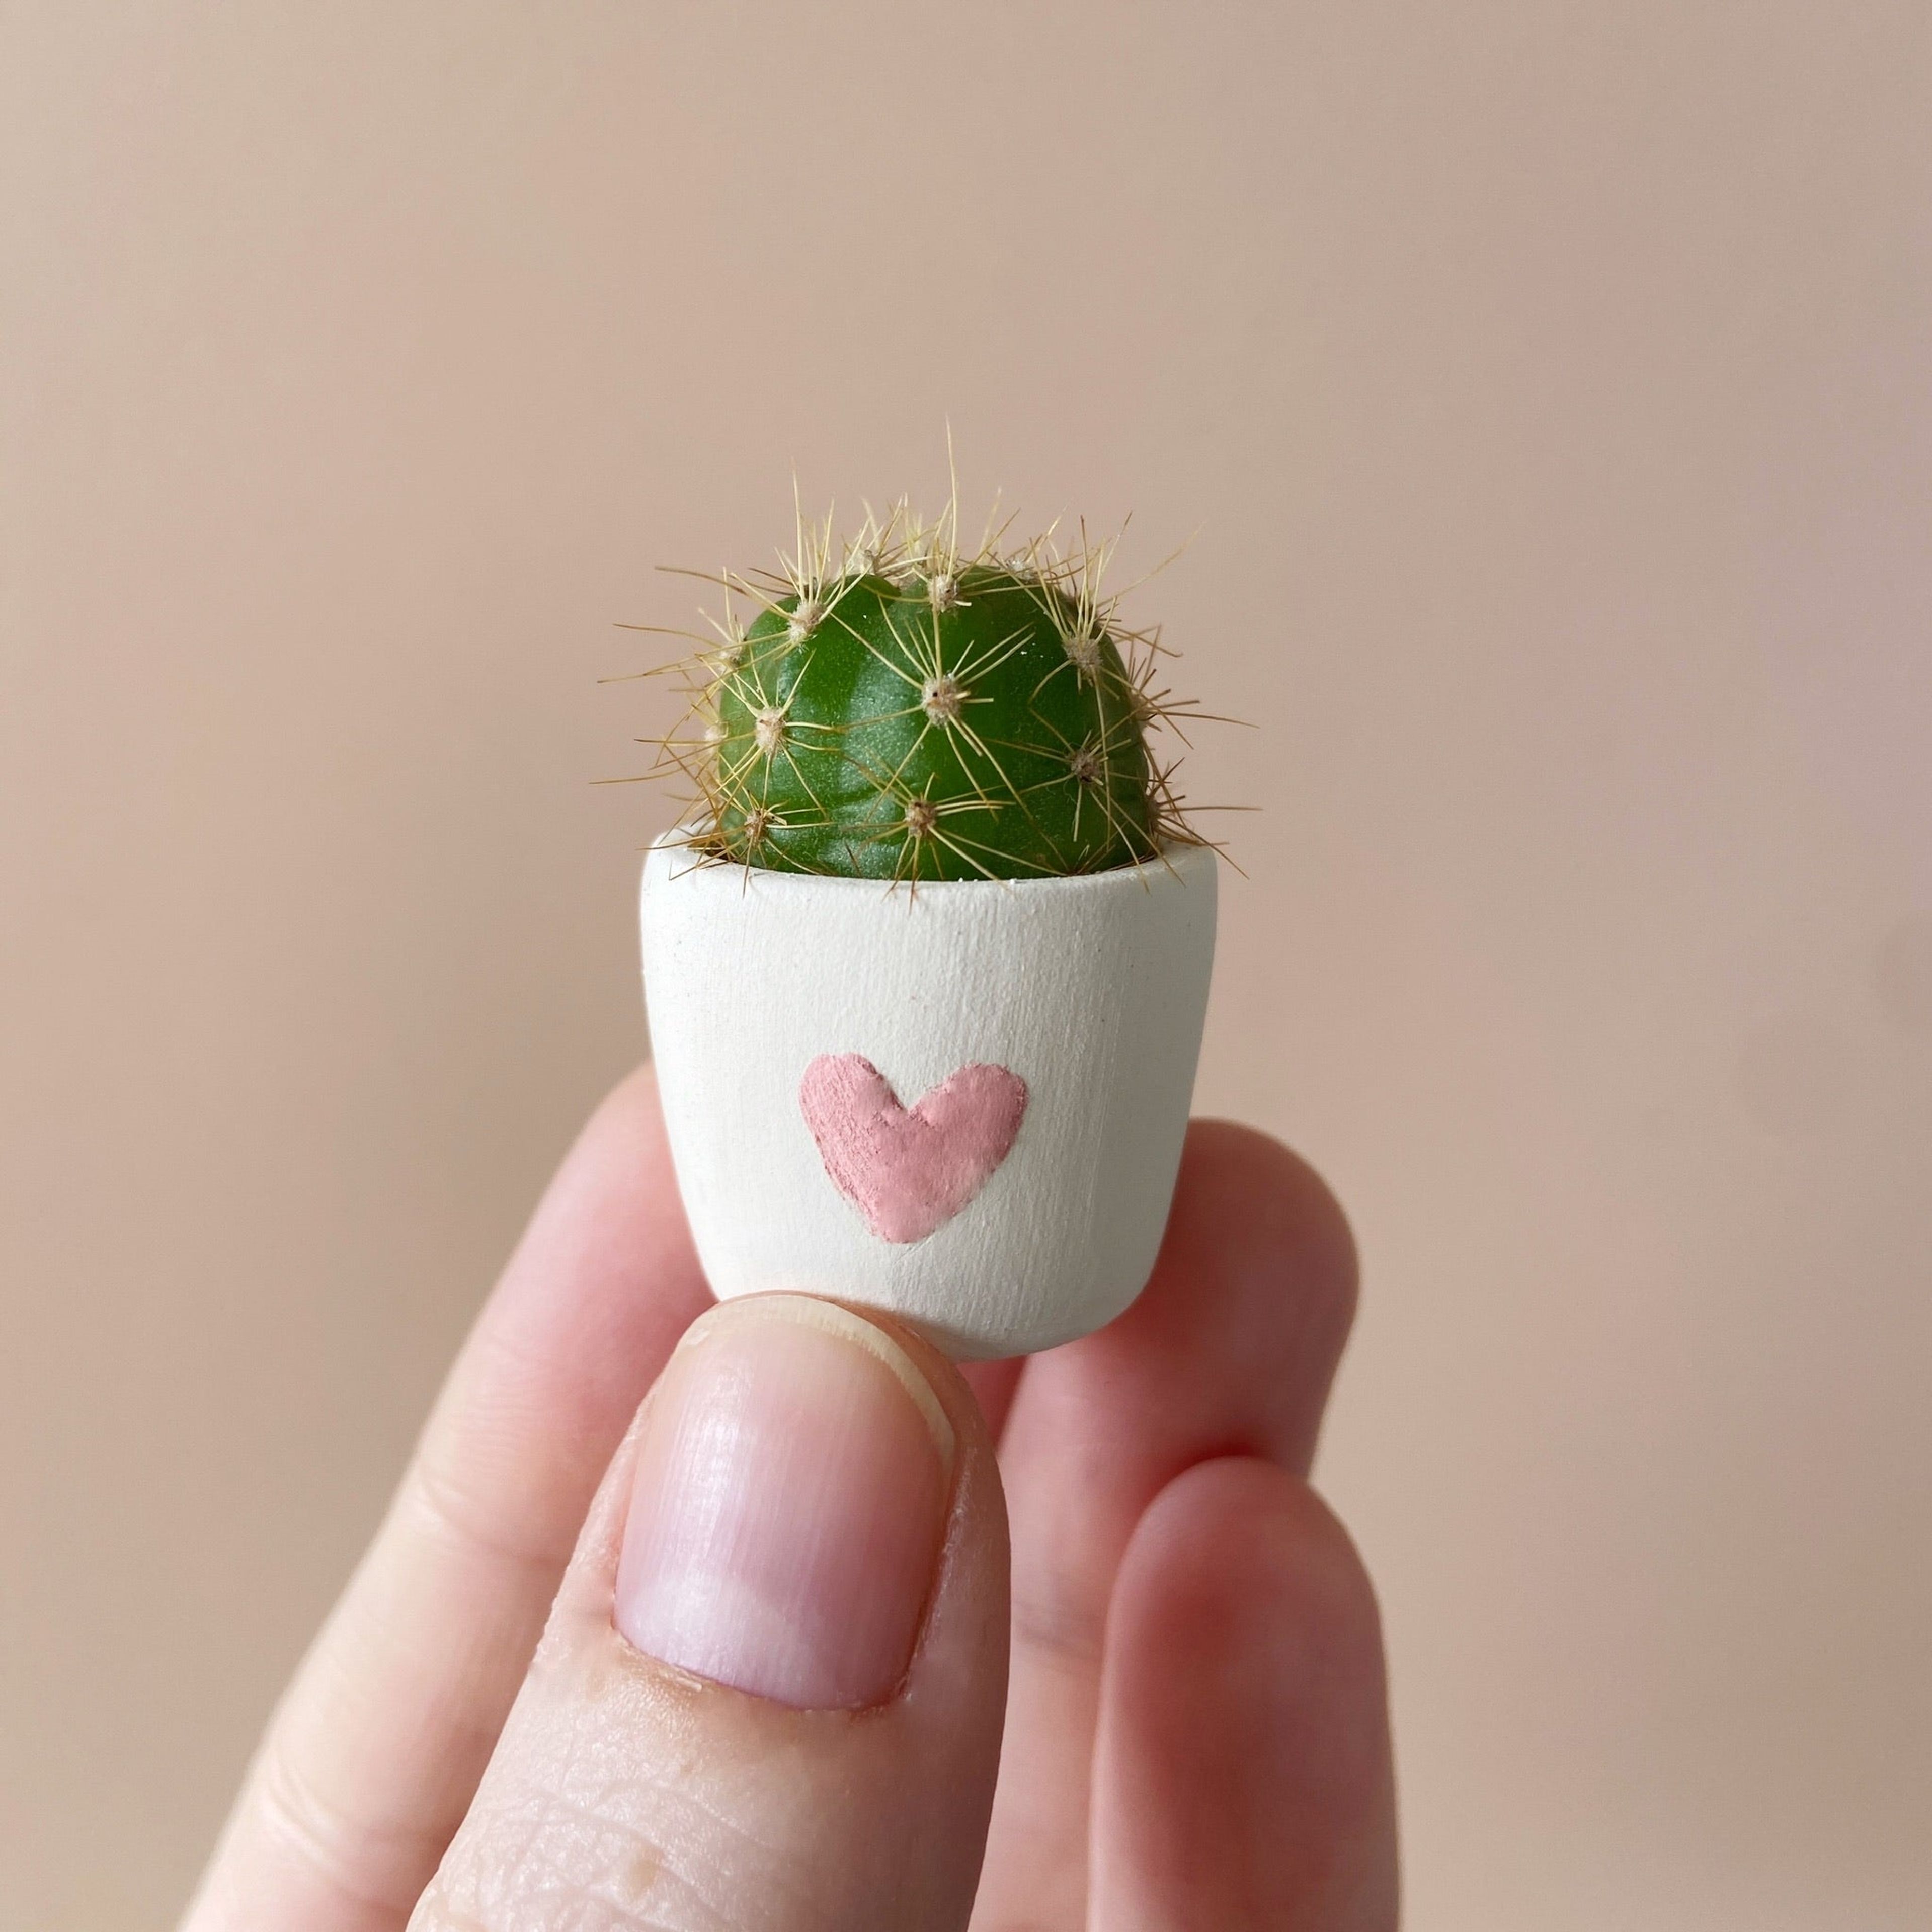 Frank Mini Cactus + Handmade Mini Ceramic Planter